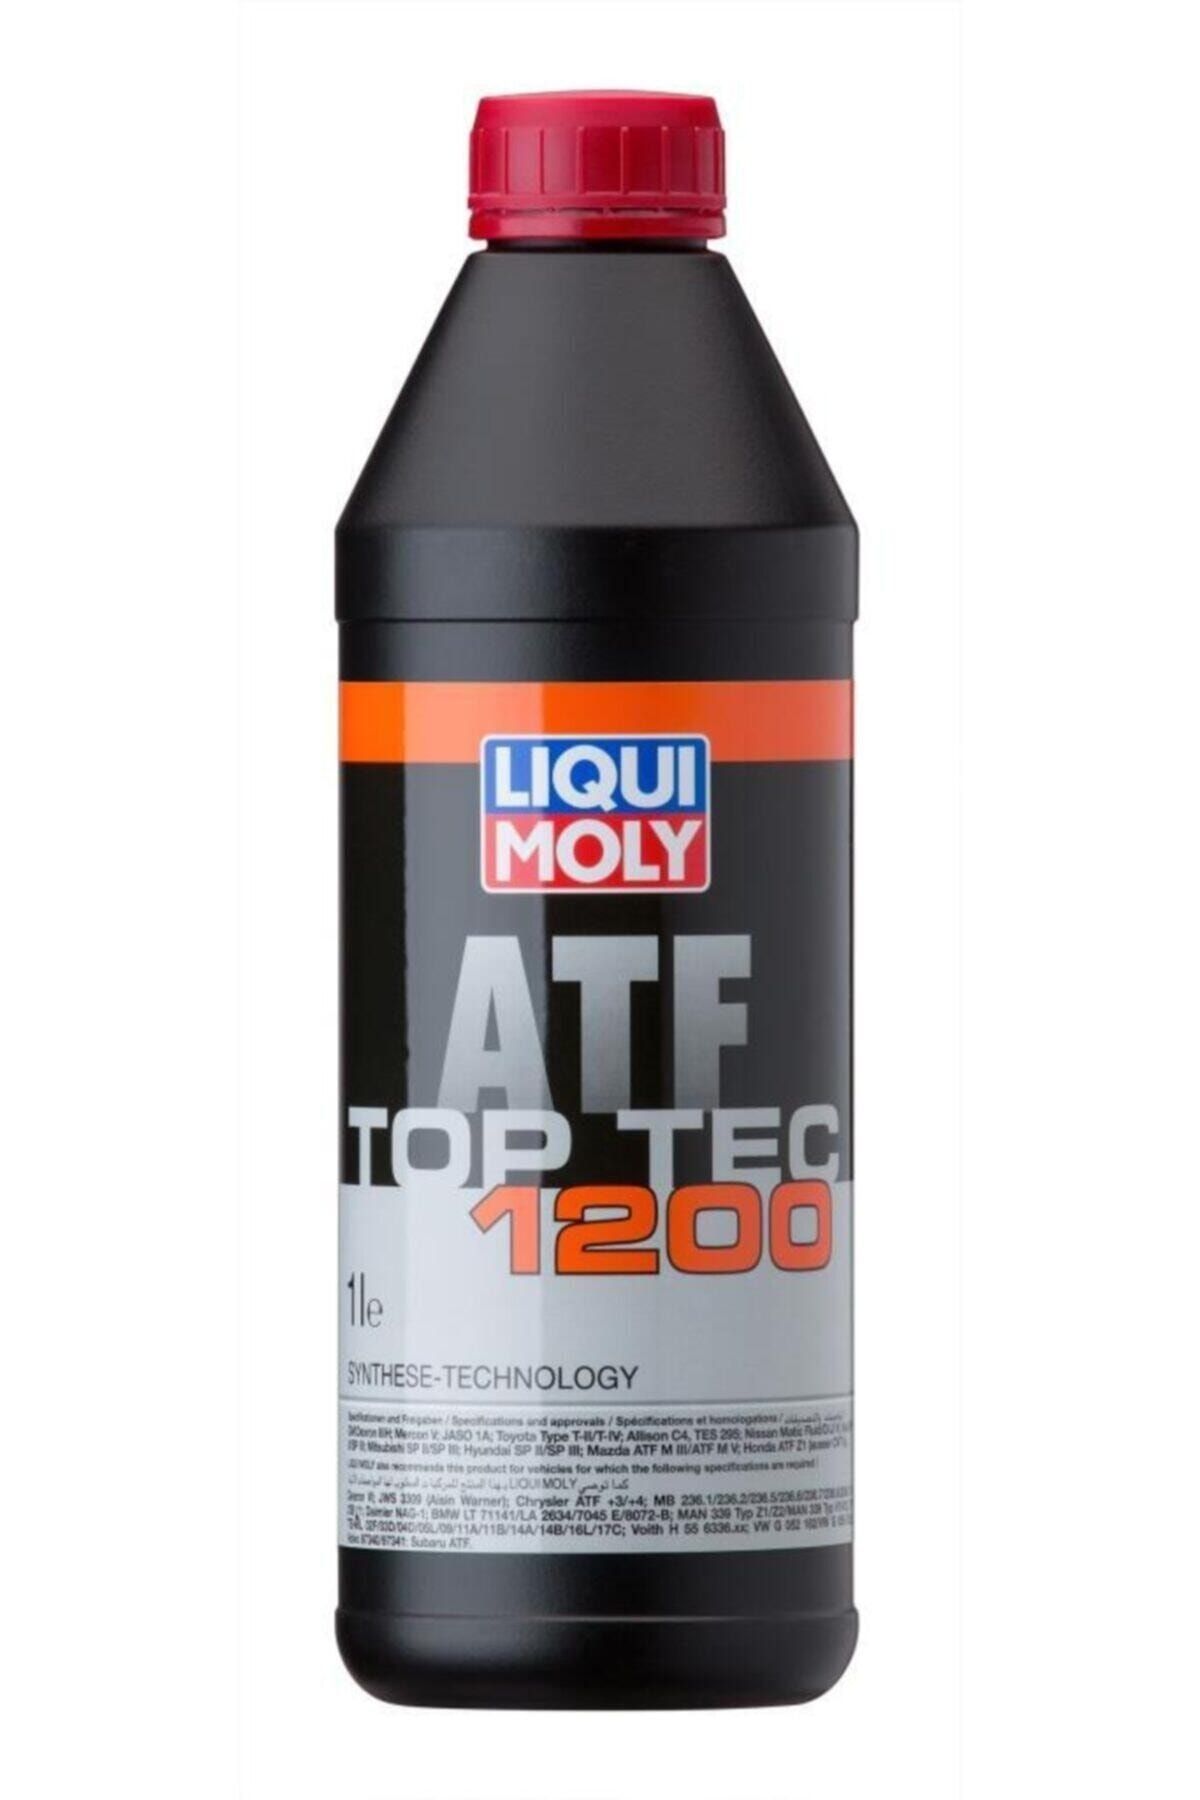 Moly top tec atf 1200. Top Tec ATF 1800" для 09g. Liqui Moly Top Tec ATF 1800 цвет масла. Liqui Moly Top Tec ATF 1200.